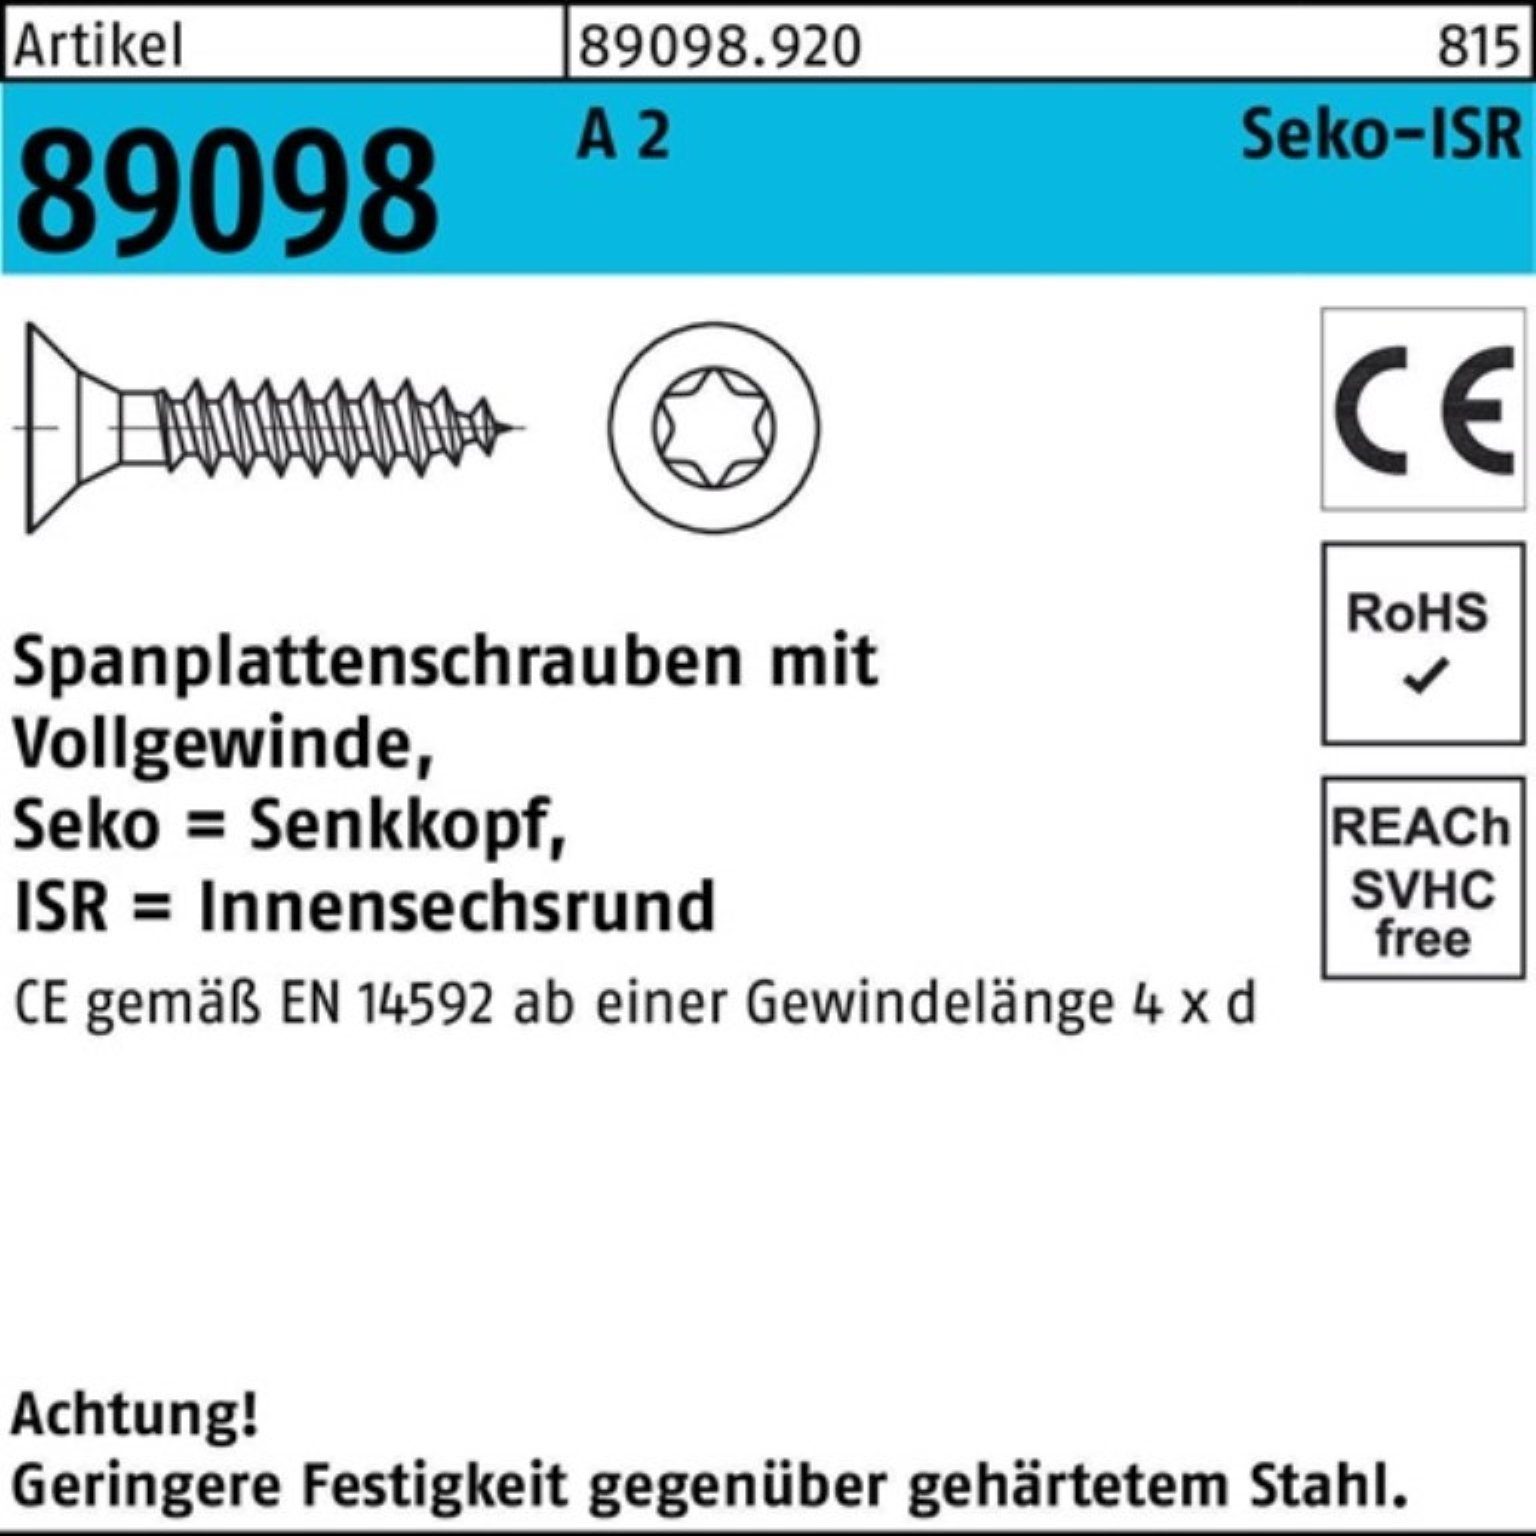 Reyher Spanplattenschraube 1000er Pack Spanplattenschraube R 89098 SEKO ISR VG 4x 50-T20 A 2 1000